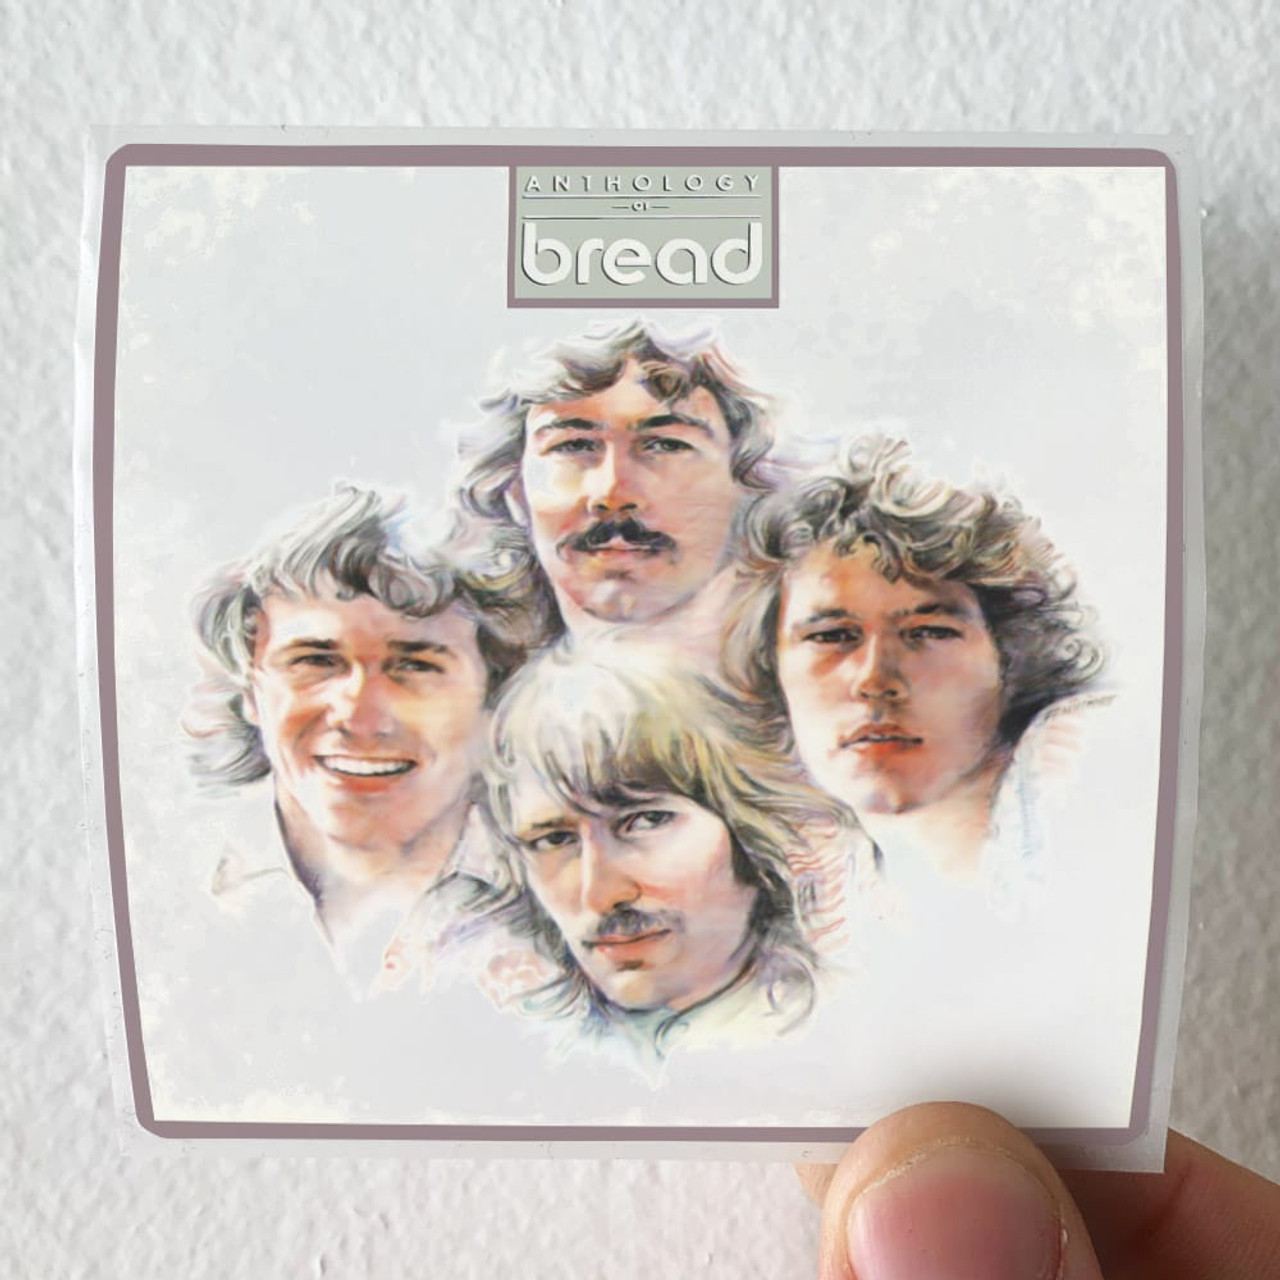 bread anthology full album